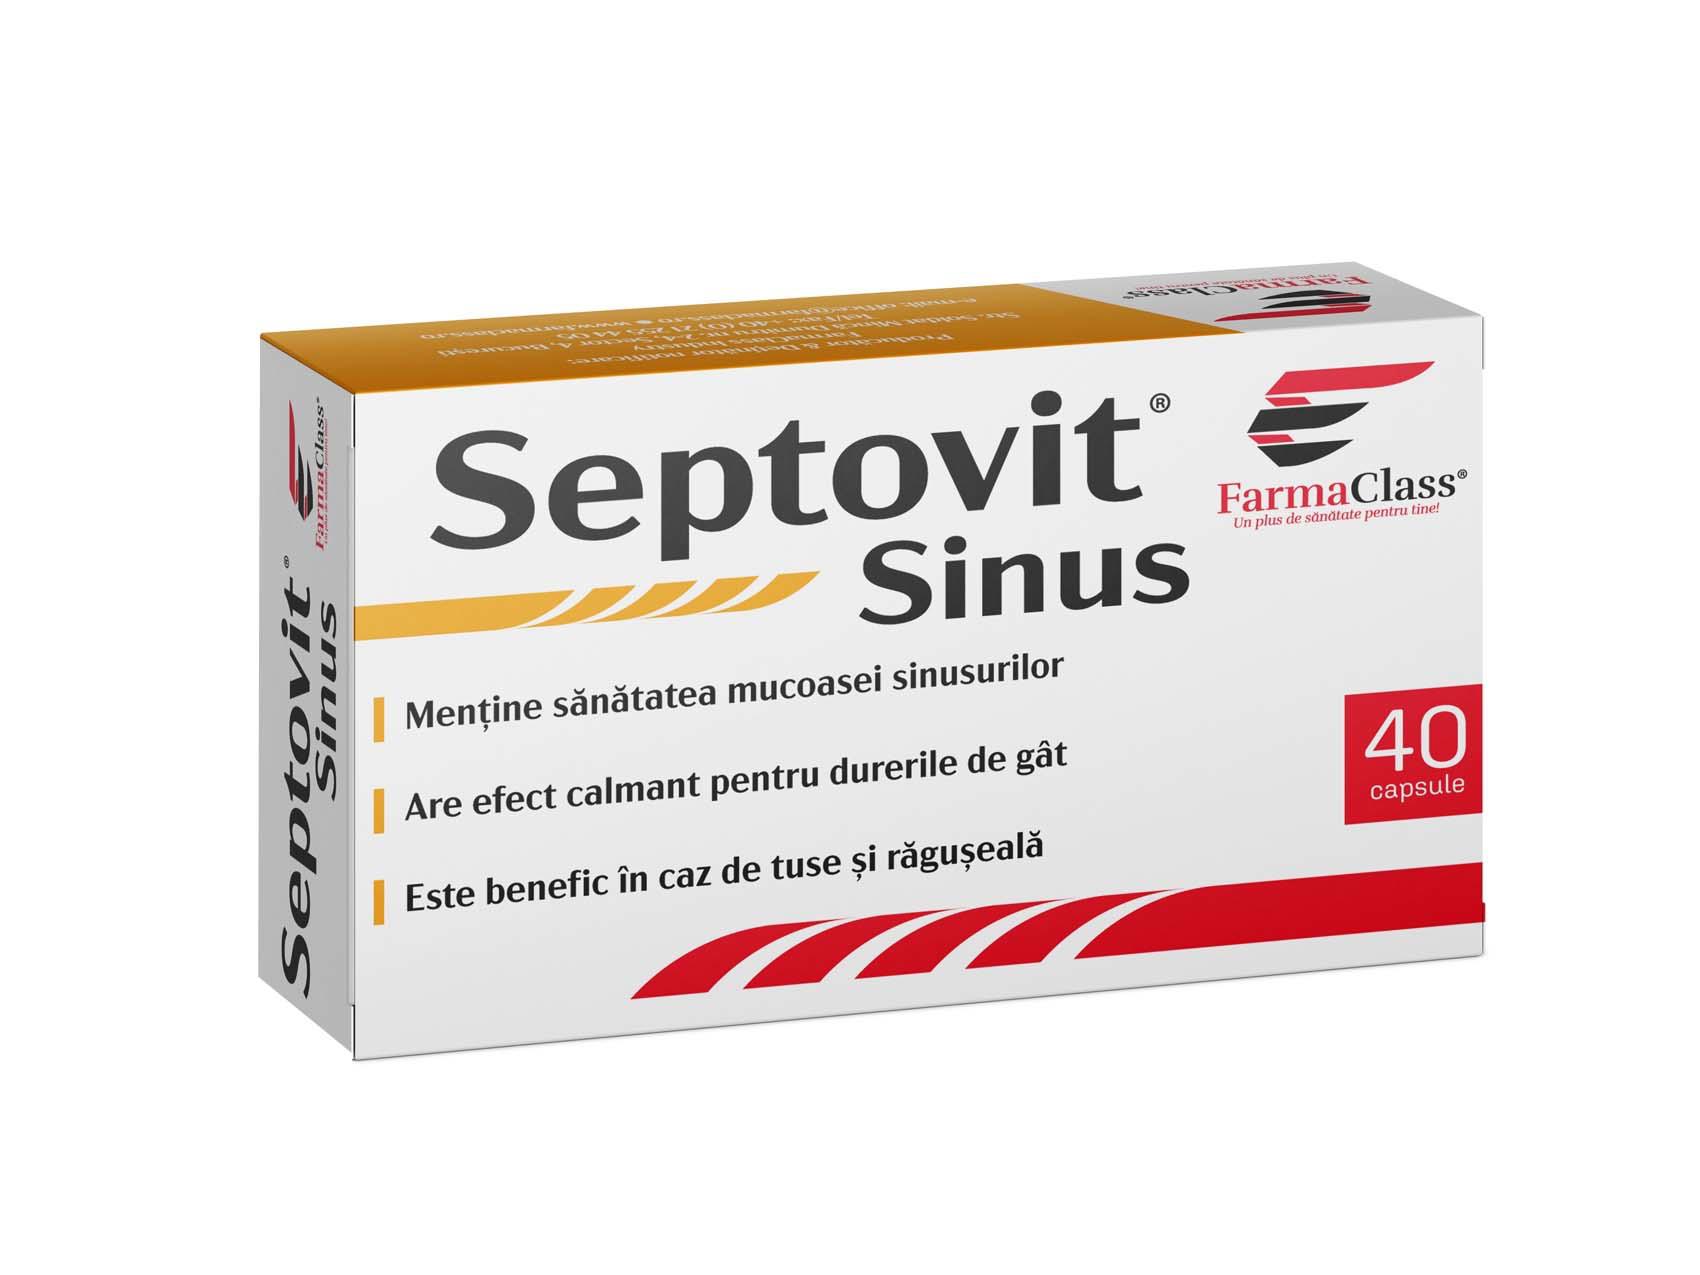 Septovit Sinus 40 capsule Farma Class